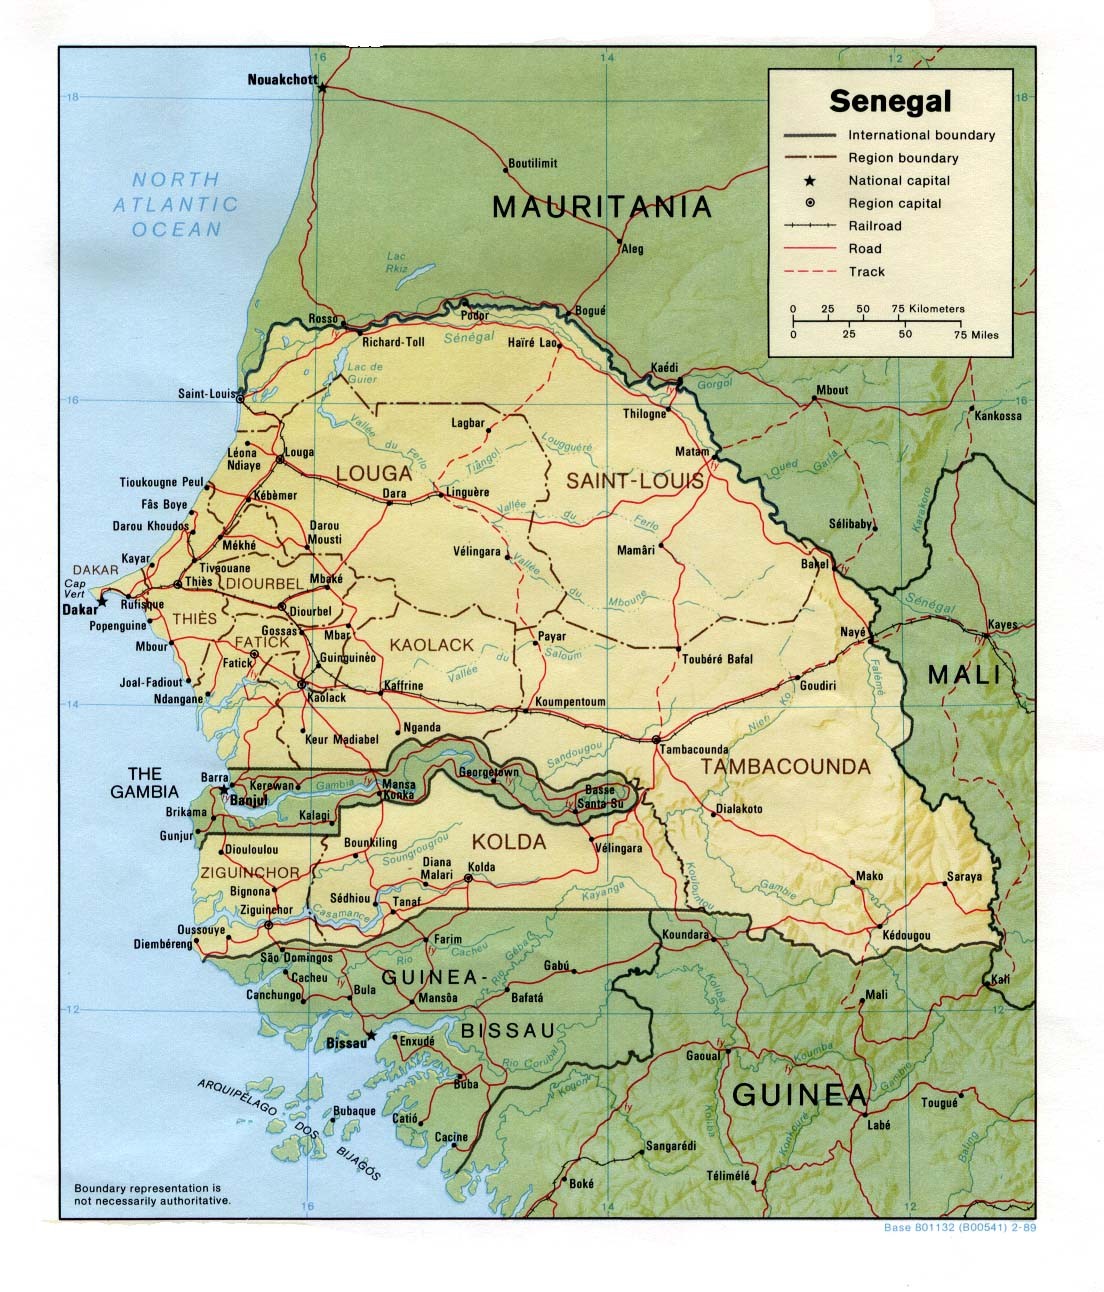 Mouhamadou-bamba : Senegal - General Information